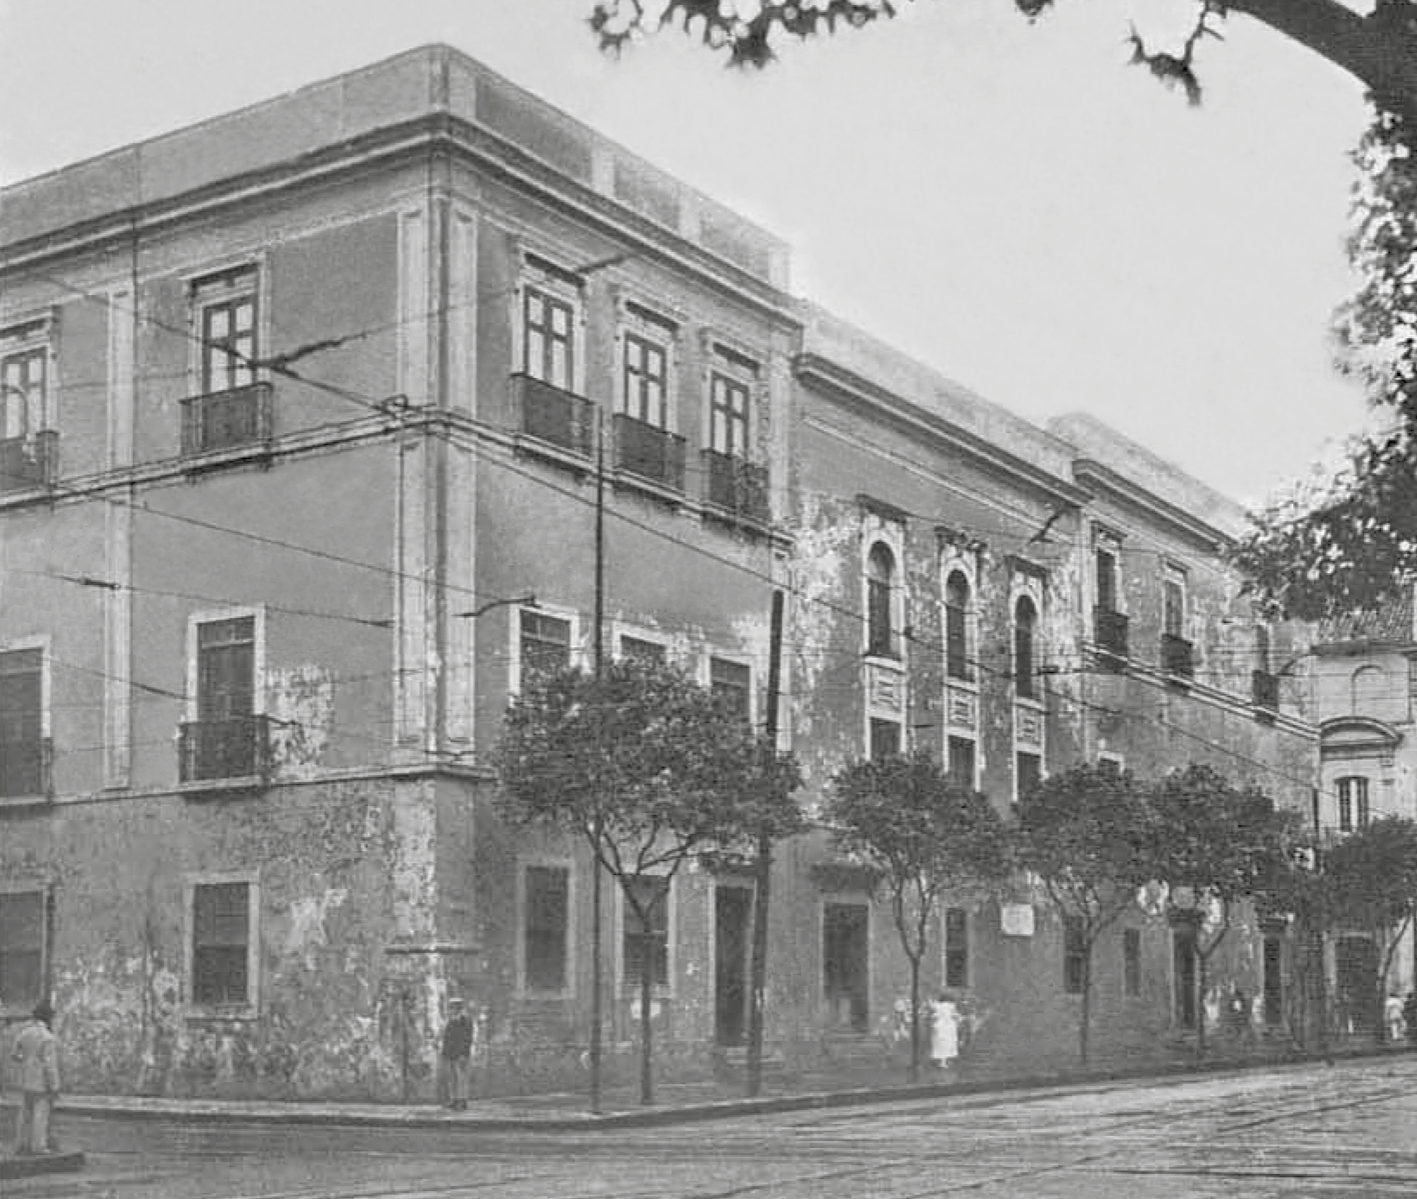 Fotografia em preto e branco. Edifício de esquina, com três andares e muitas janelas de moldura retangular. Na calçada algumas árvores.